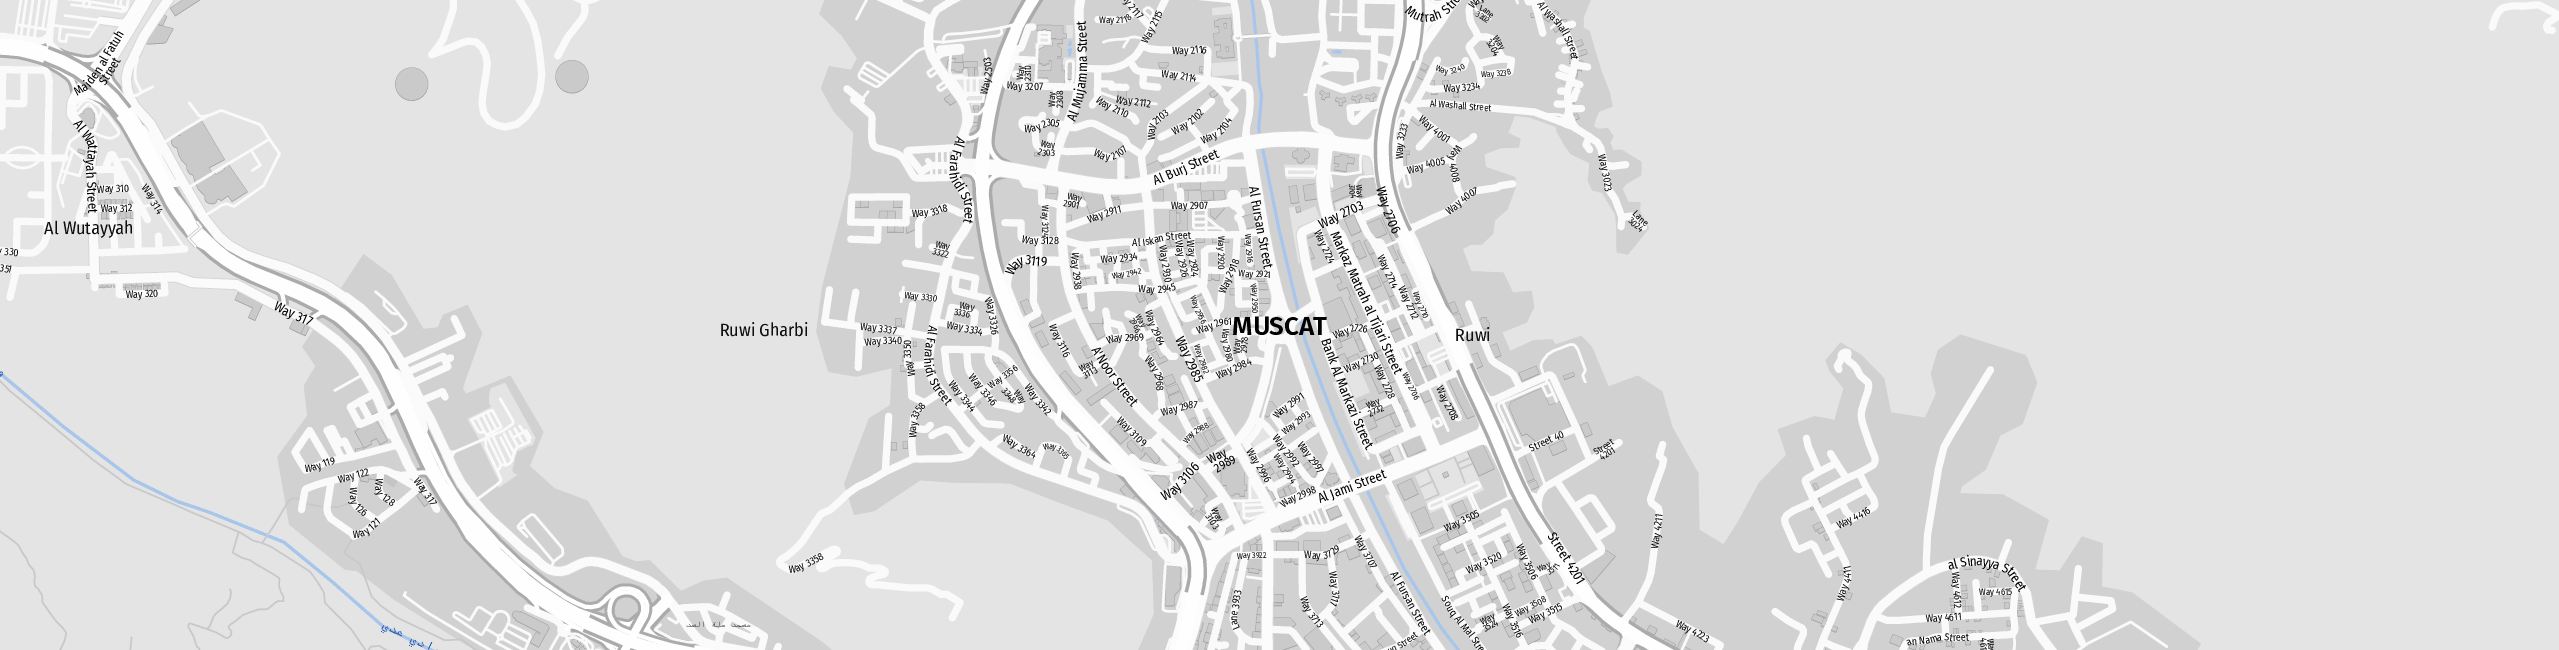 Stadtplan Muscat, Oman zum Downloaden.